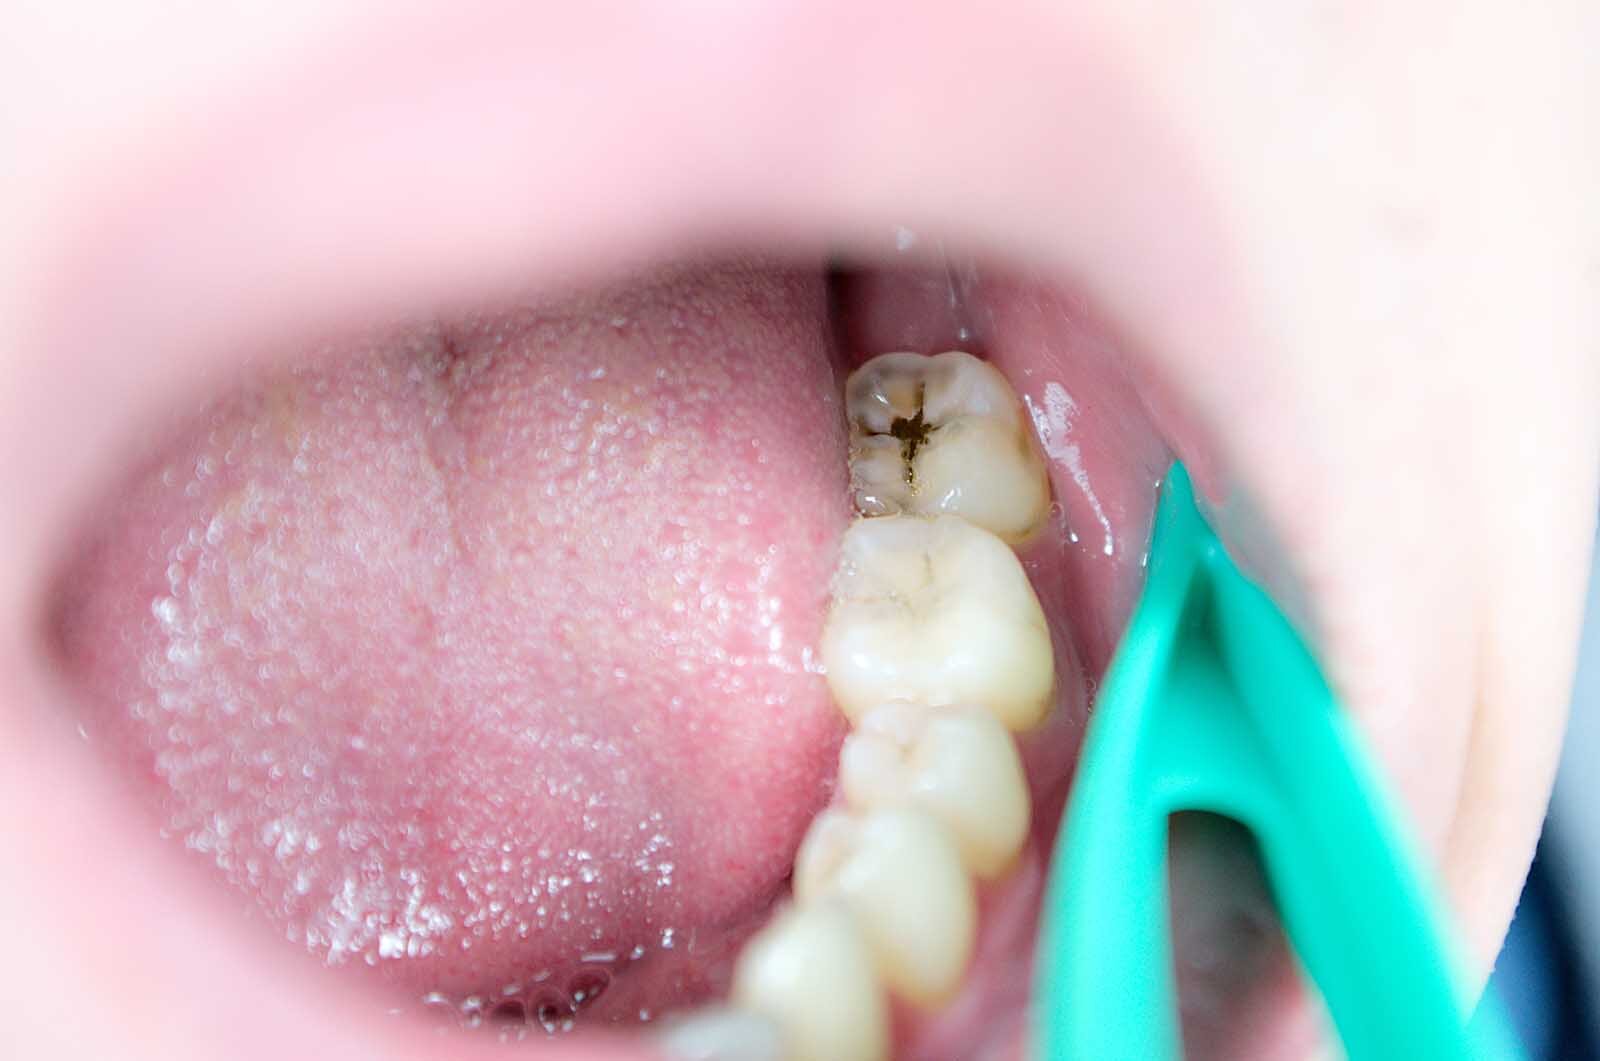 severe molar decay